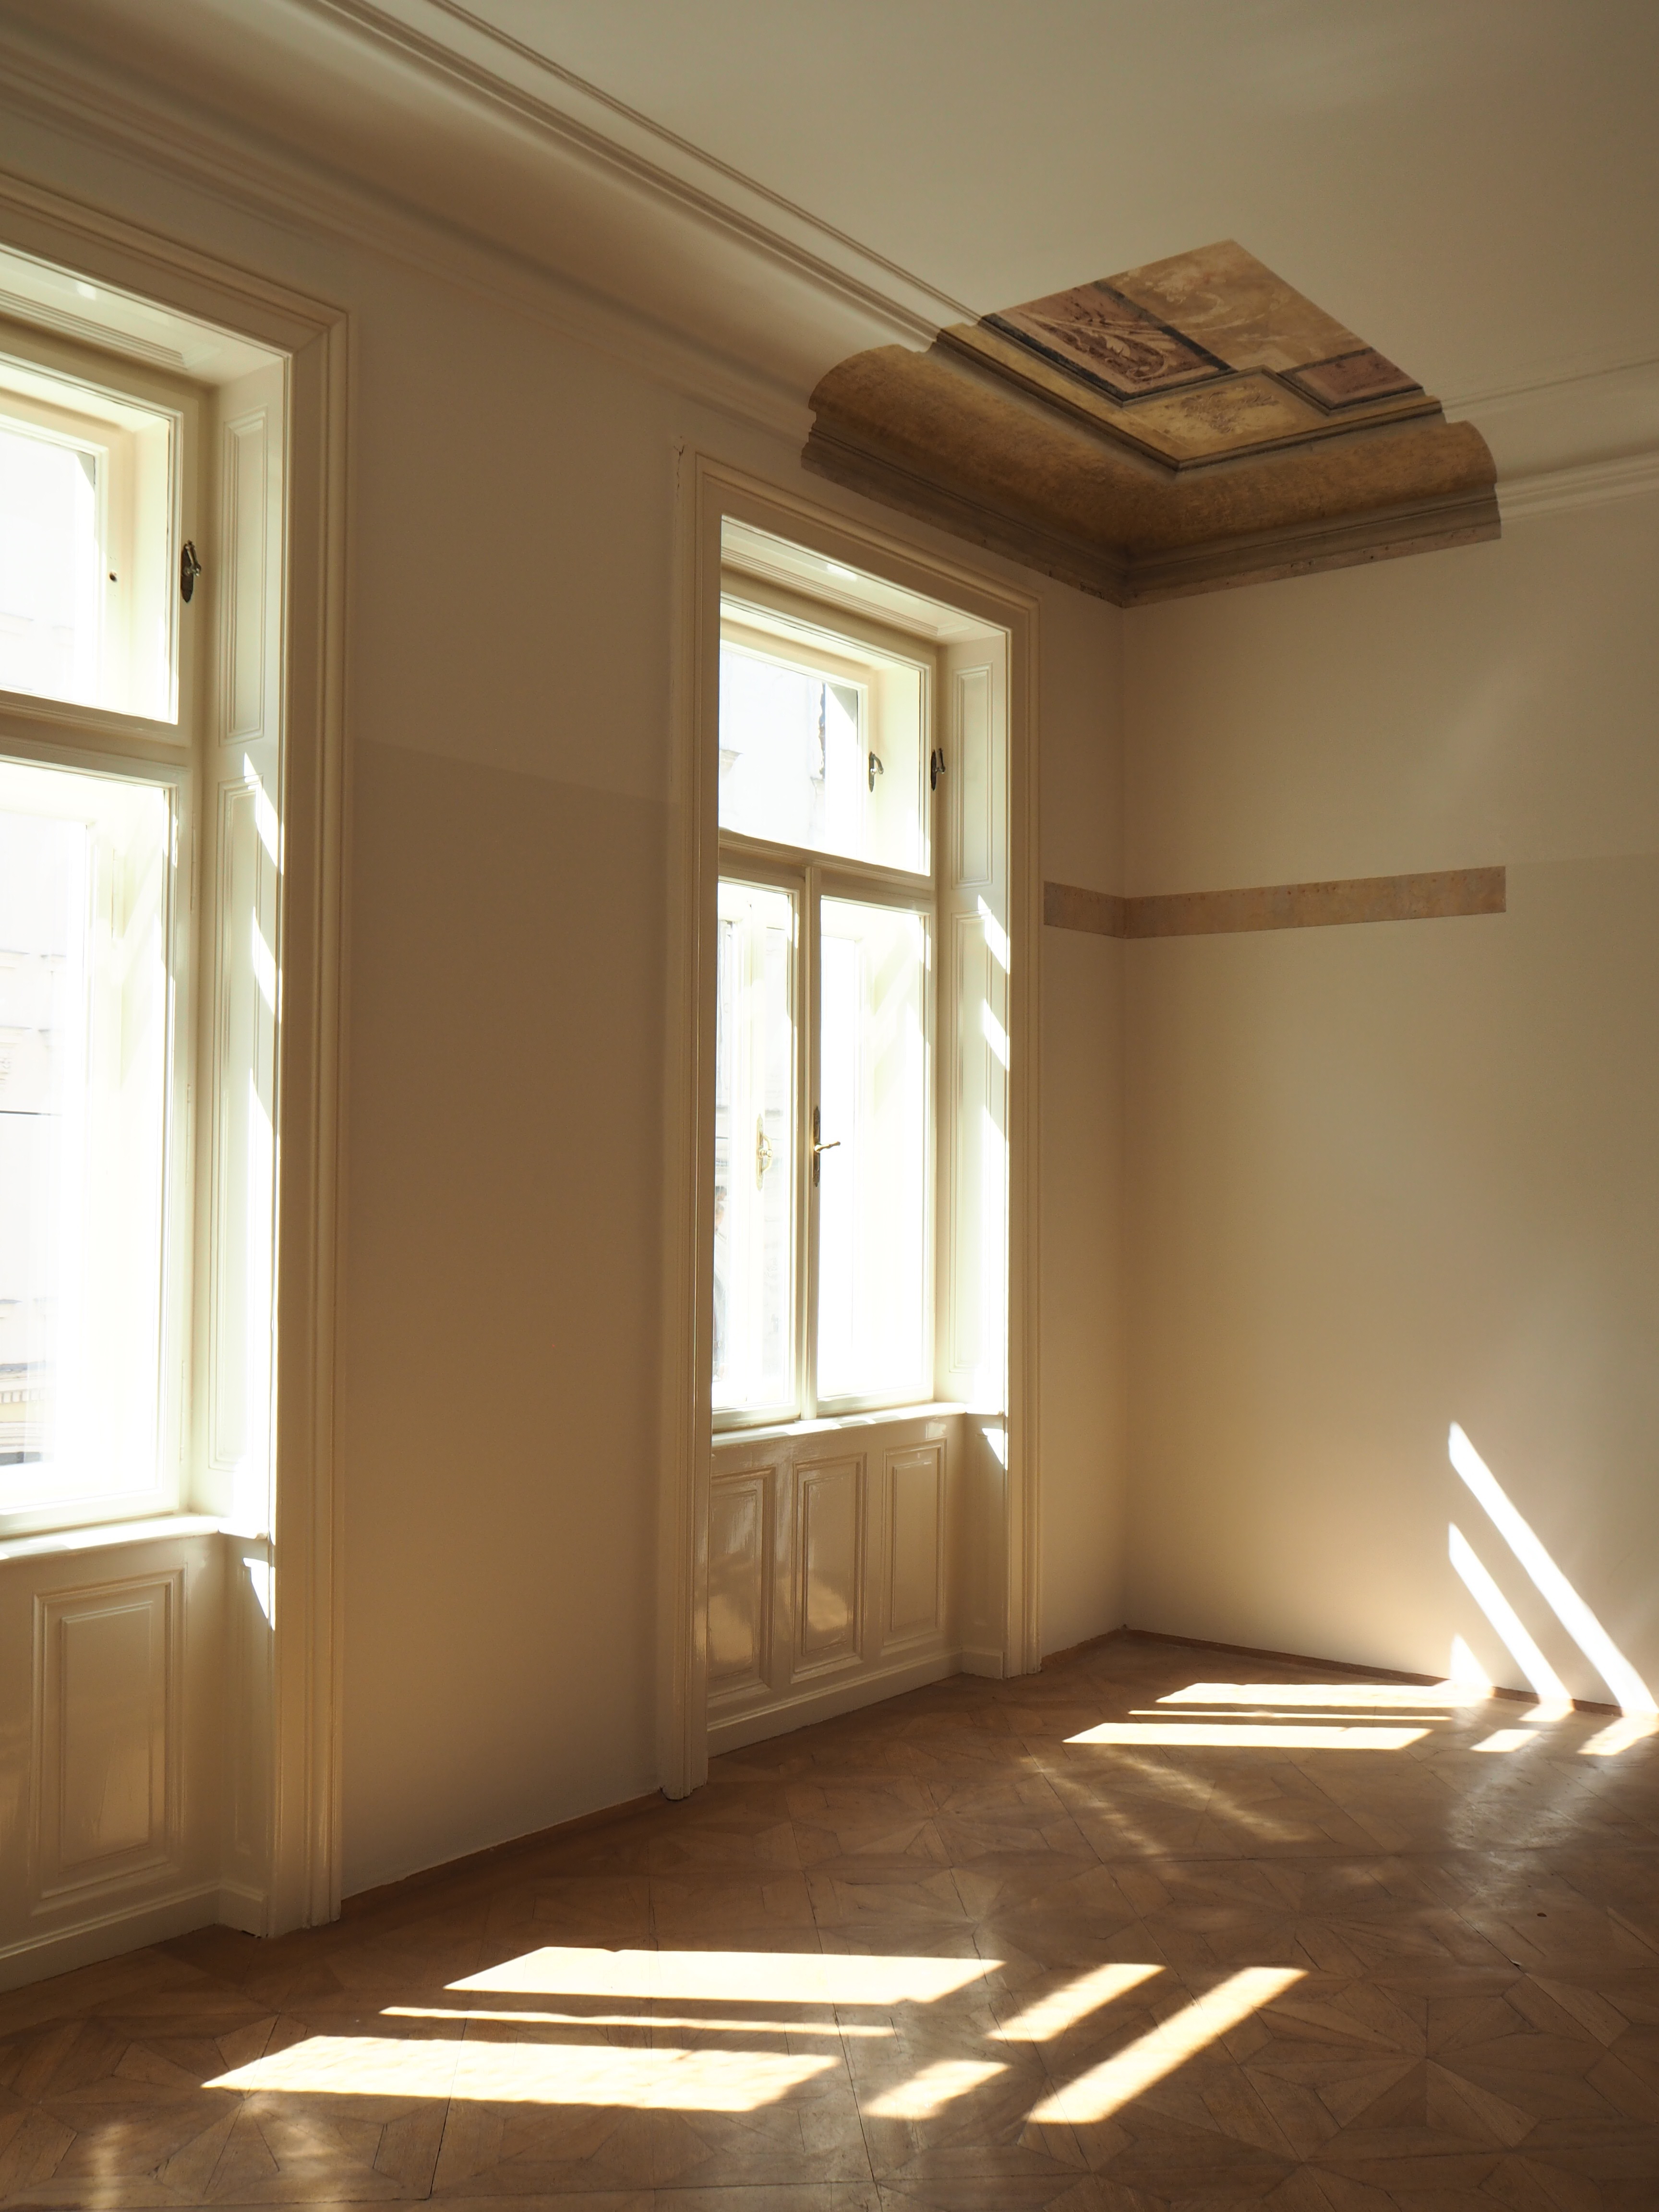 Szczegółowa fotografia w pokoju Anny Freud z odsłoniętym sufitem 